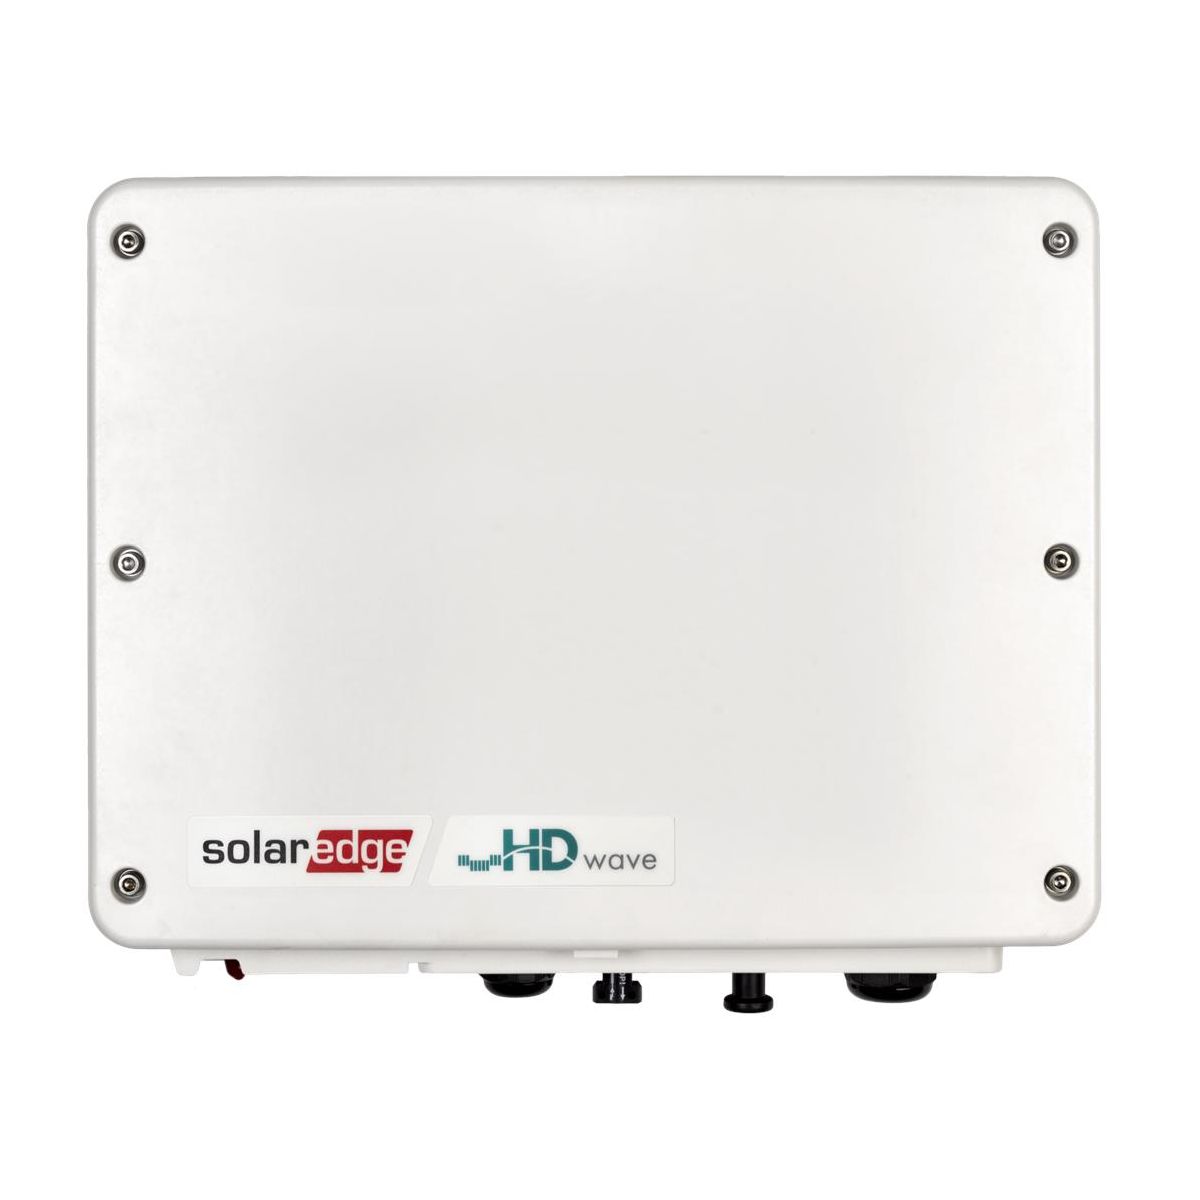 afstuderen Anzai Emulatie SolarEdge 1PH Omvormer 3.68kW, HD-Wave Technologie, met SetApp configuratie  - Volt Zonnepanelen